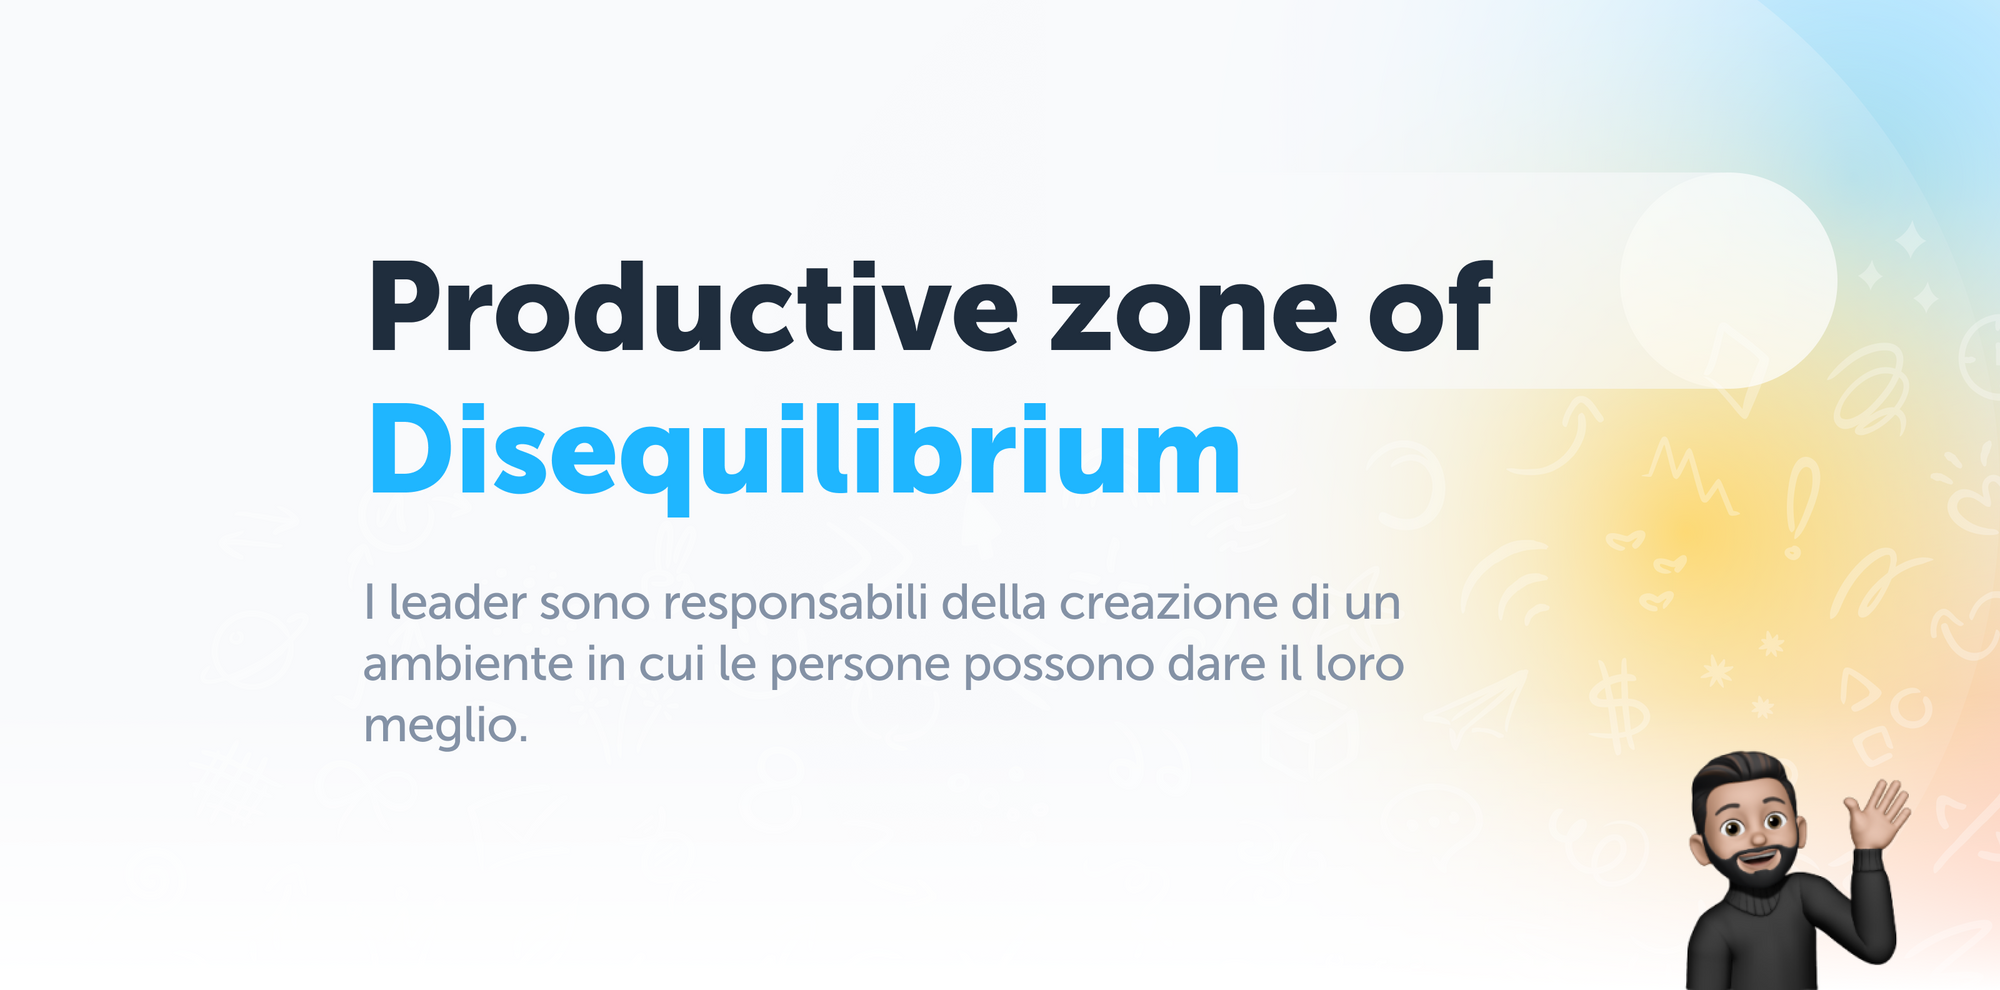 Productive zone of disequilibrium